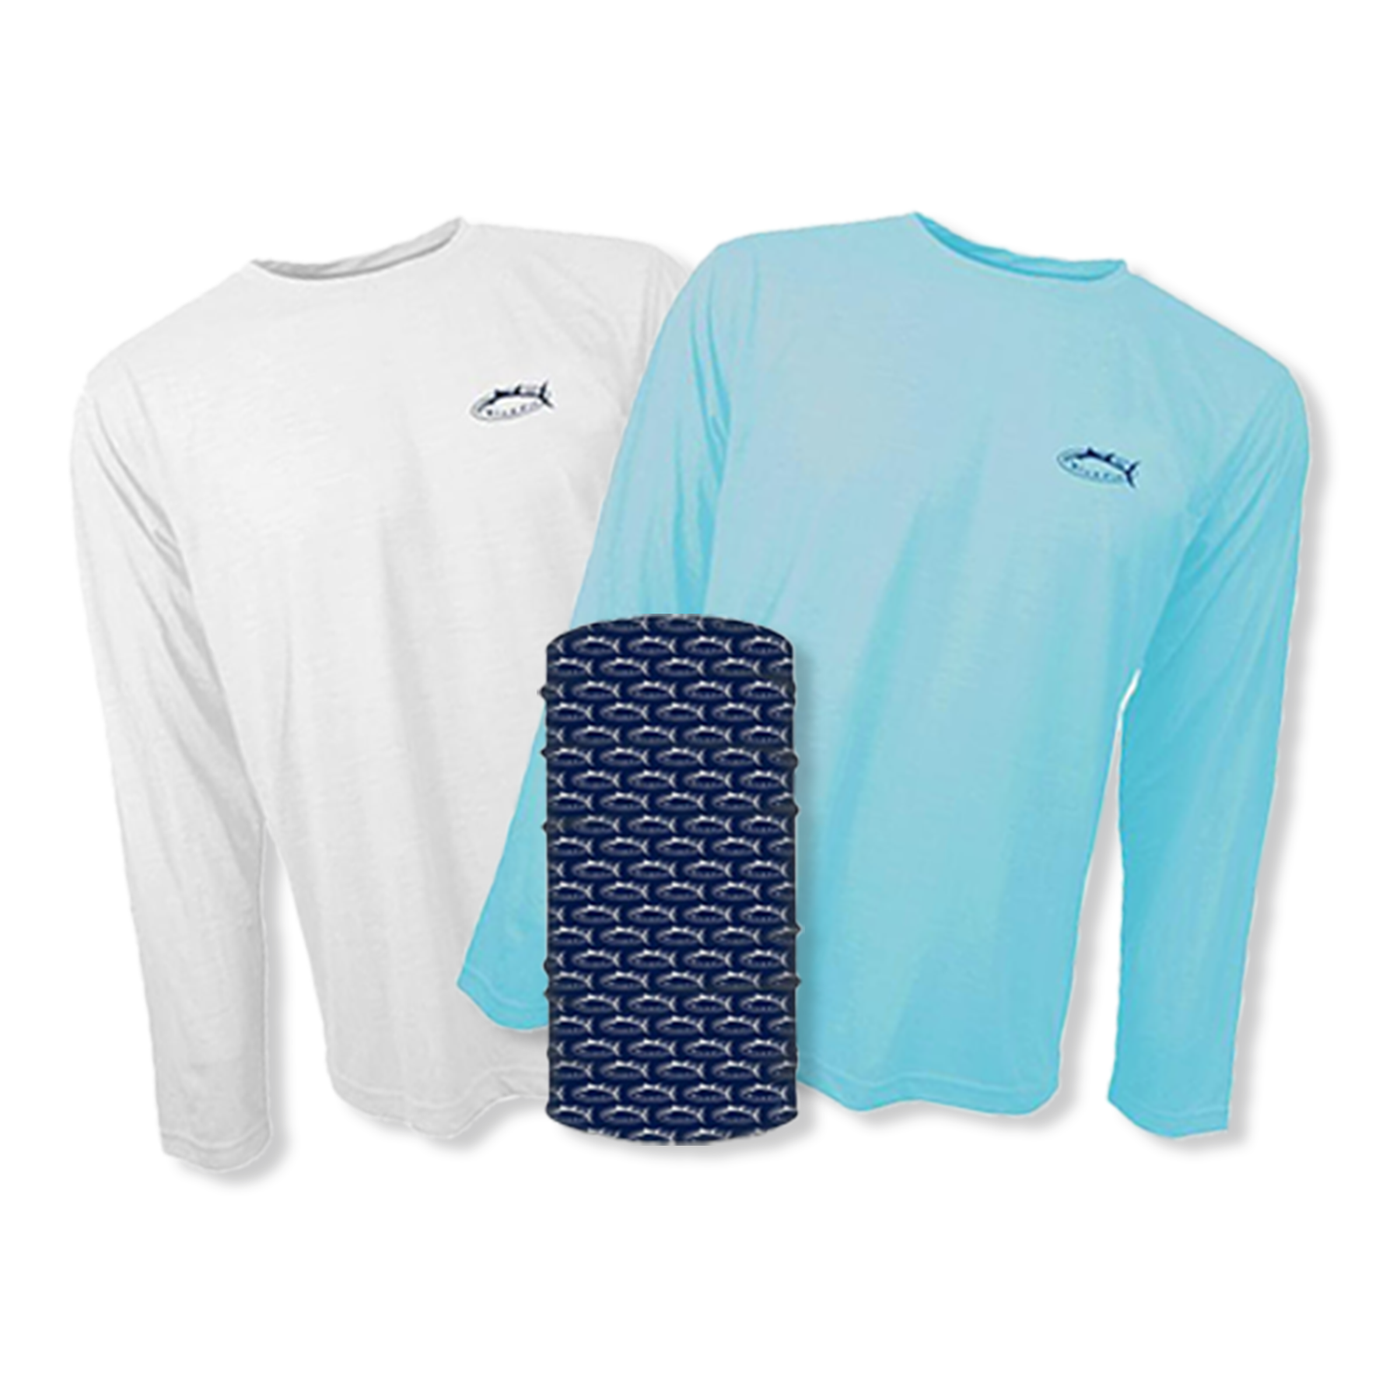 Bluefin Long Sleeve Sun Shirt Combo + Free Bluefin Face Shield